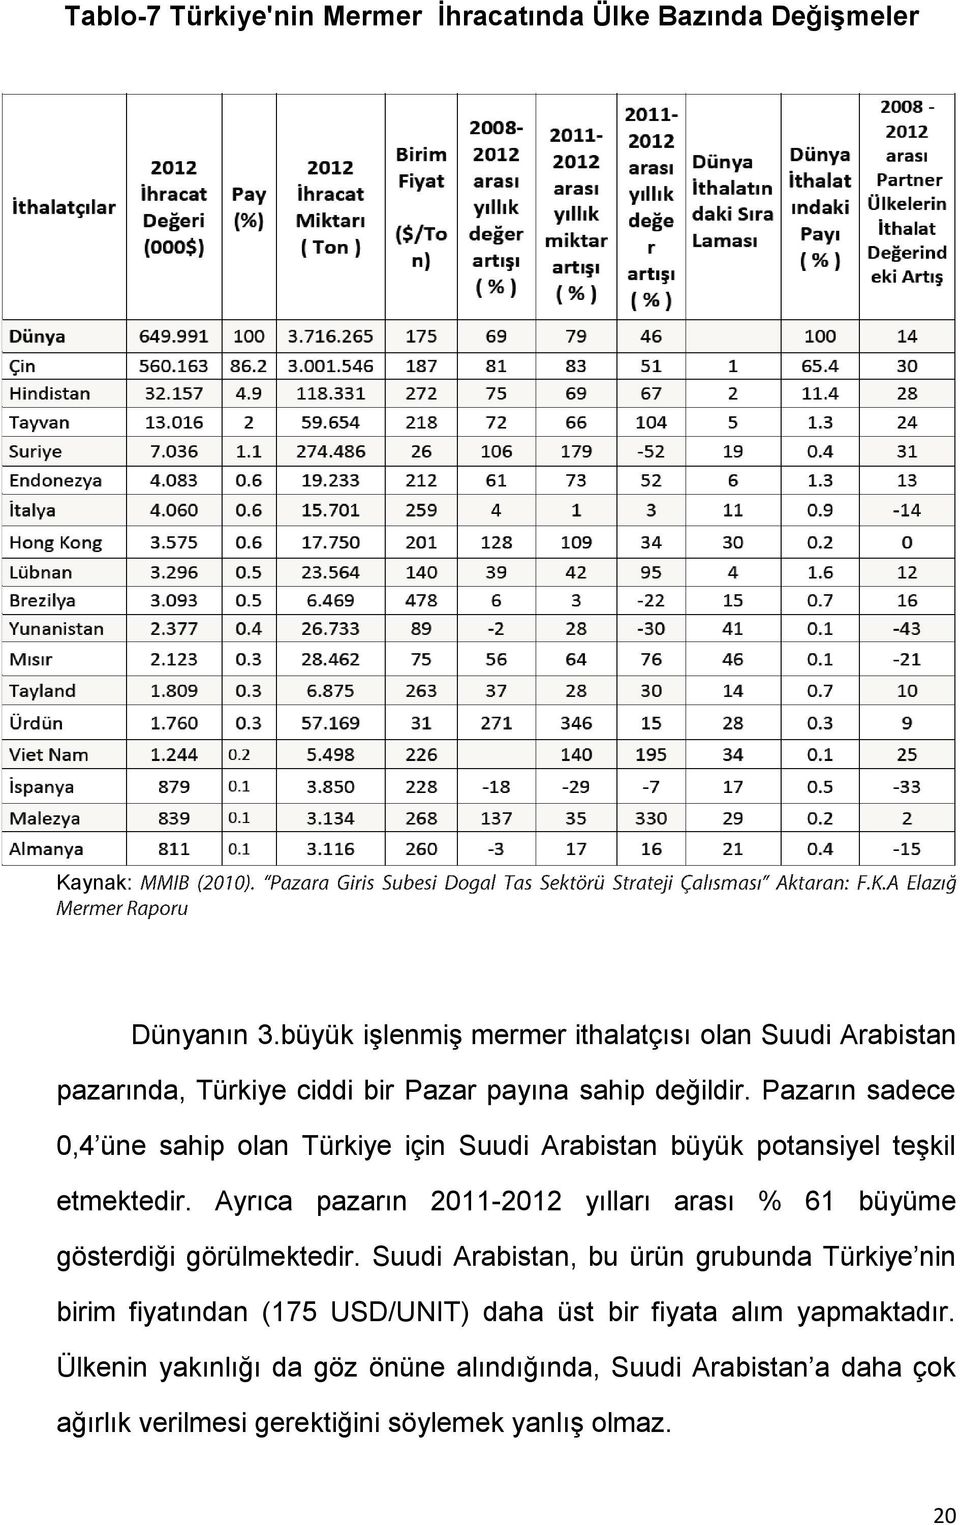 Pazarın sadece 0,4 üne sahip olan Türkiye için Suudi Arabistan büyük potansiyel teşkil etmektedir.